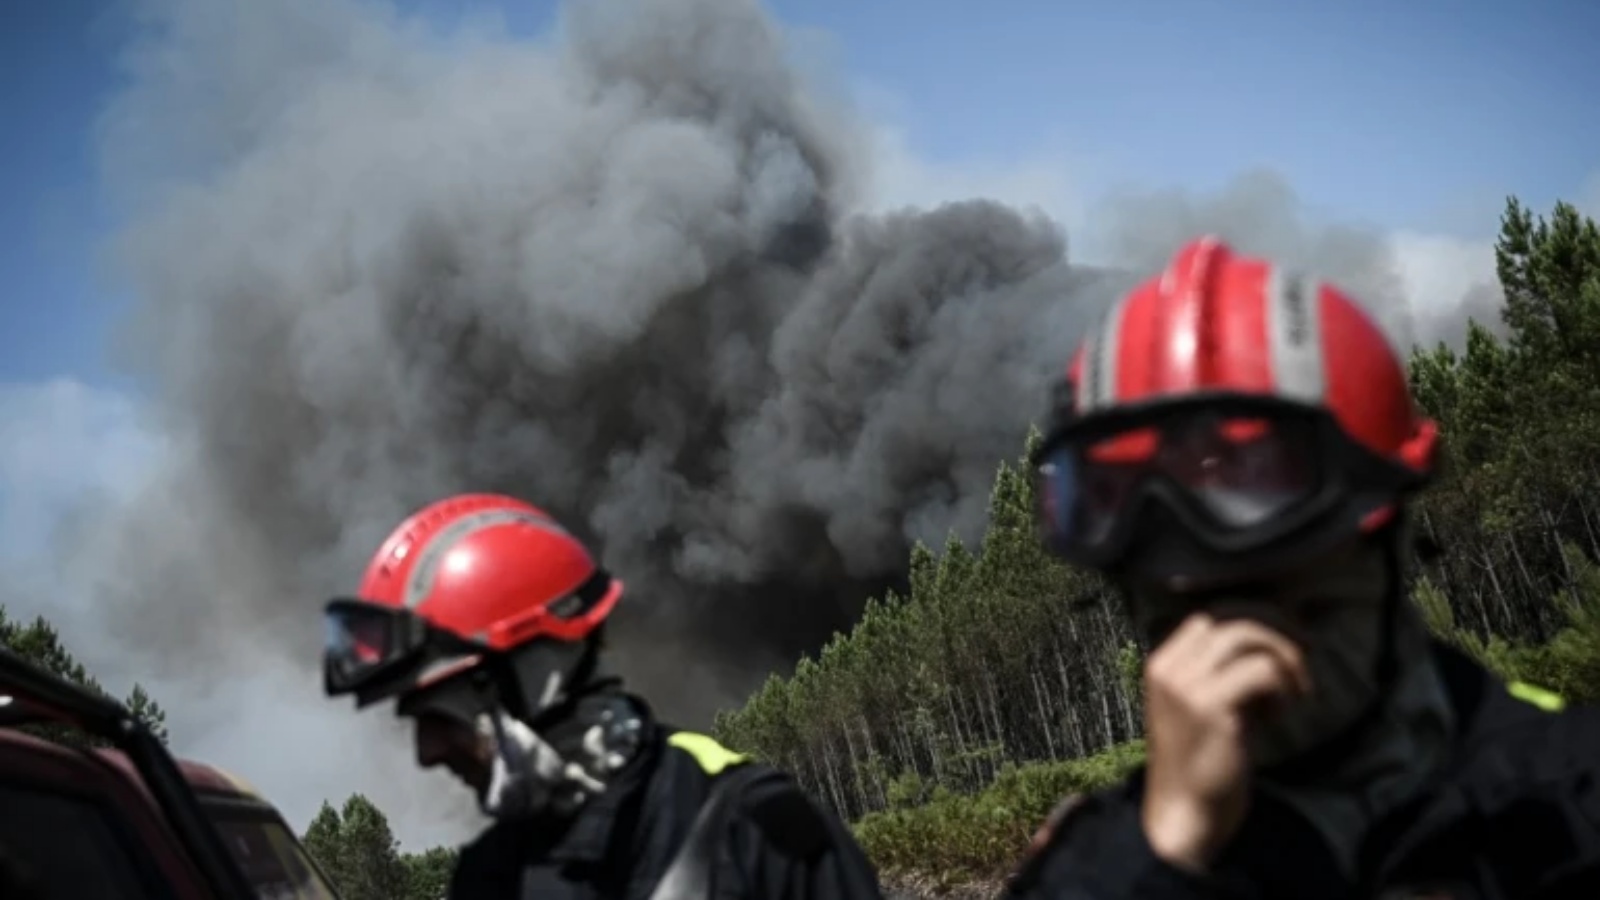 رجال الإطفاء على طريق حيث شوهد دخان كثيف في الخلفية أثناء حرائق الغابات بالقرب من مدينة أورين، فرنسا